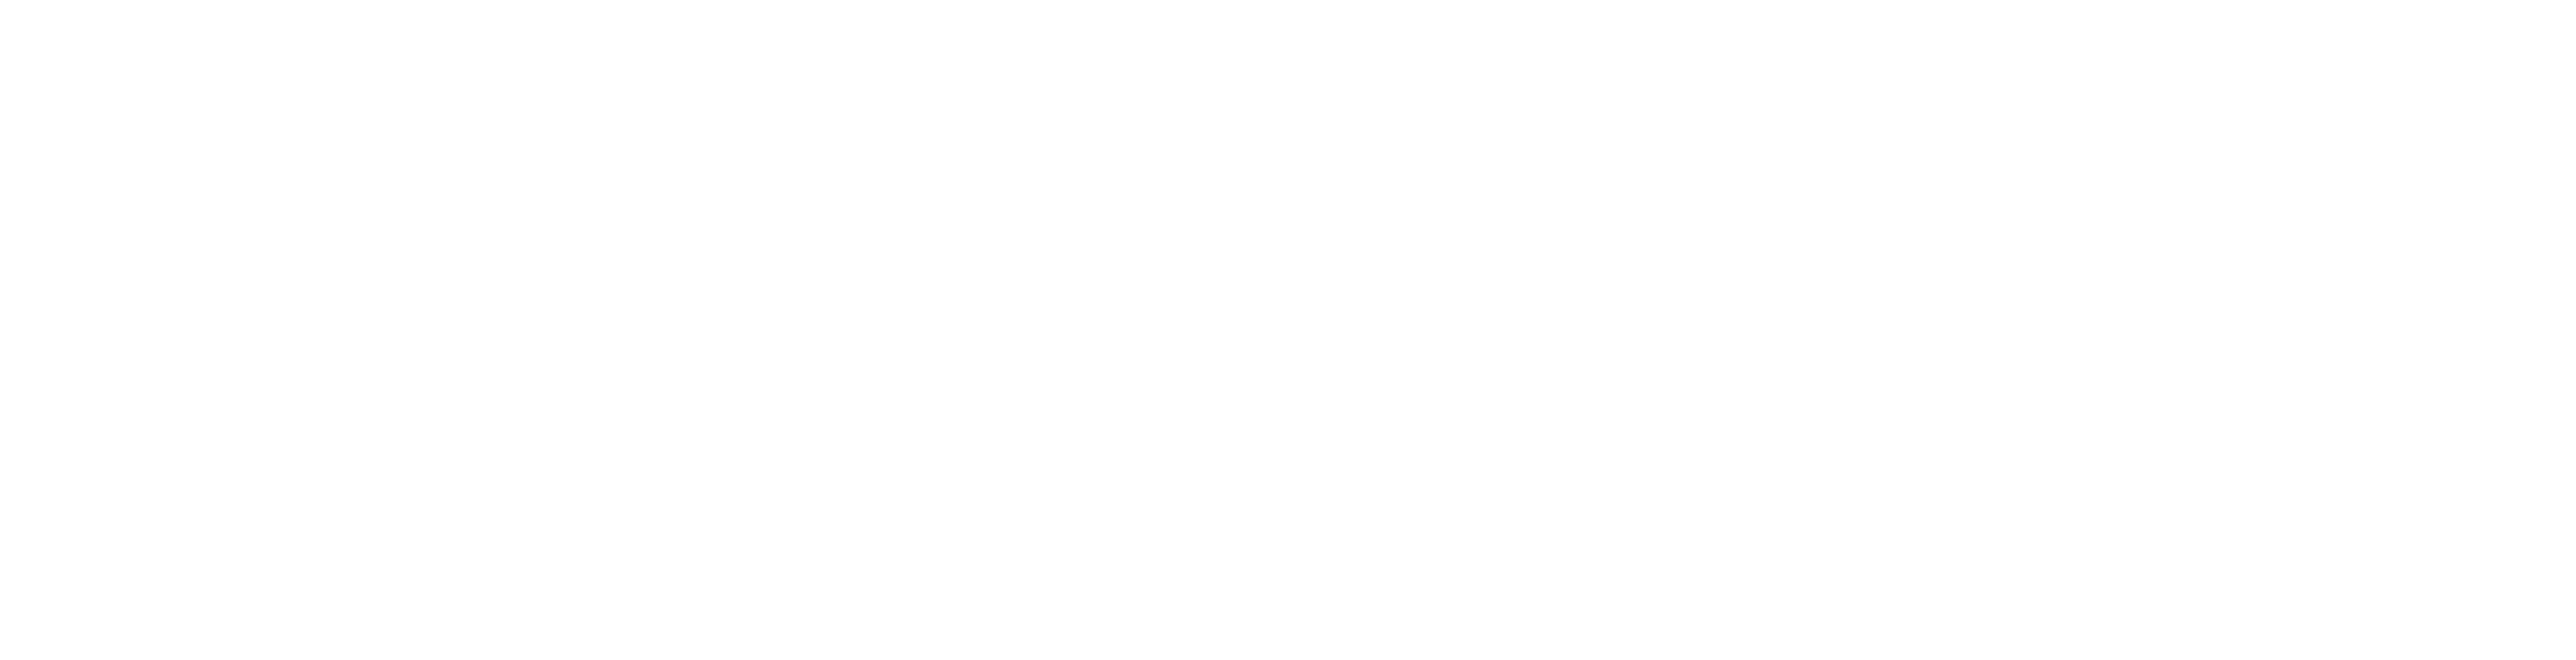 Interpark 徽标